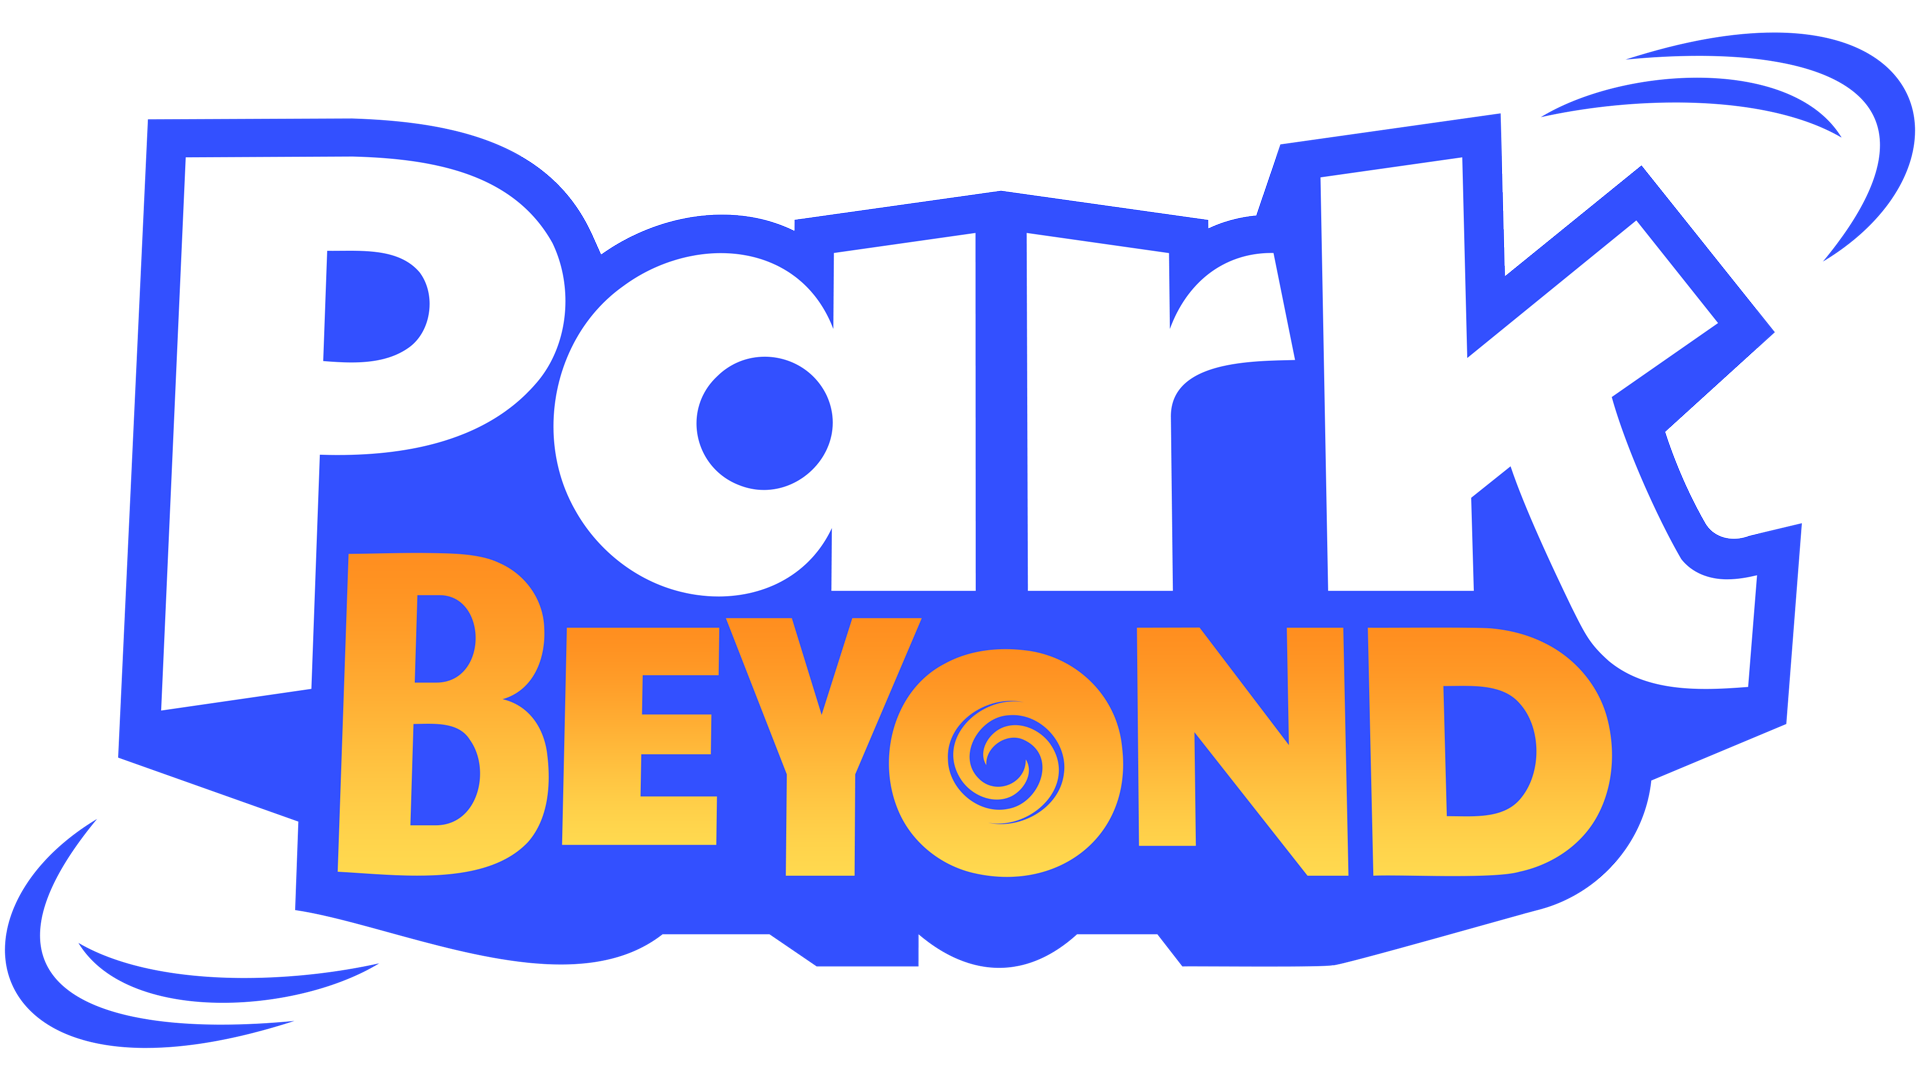 Park Beyond collabore avec la plateforme mod.io pour partager les contenus créés par les utilisateurs